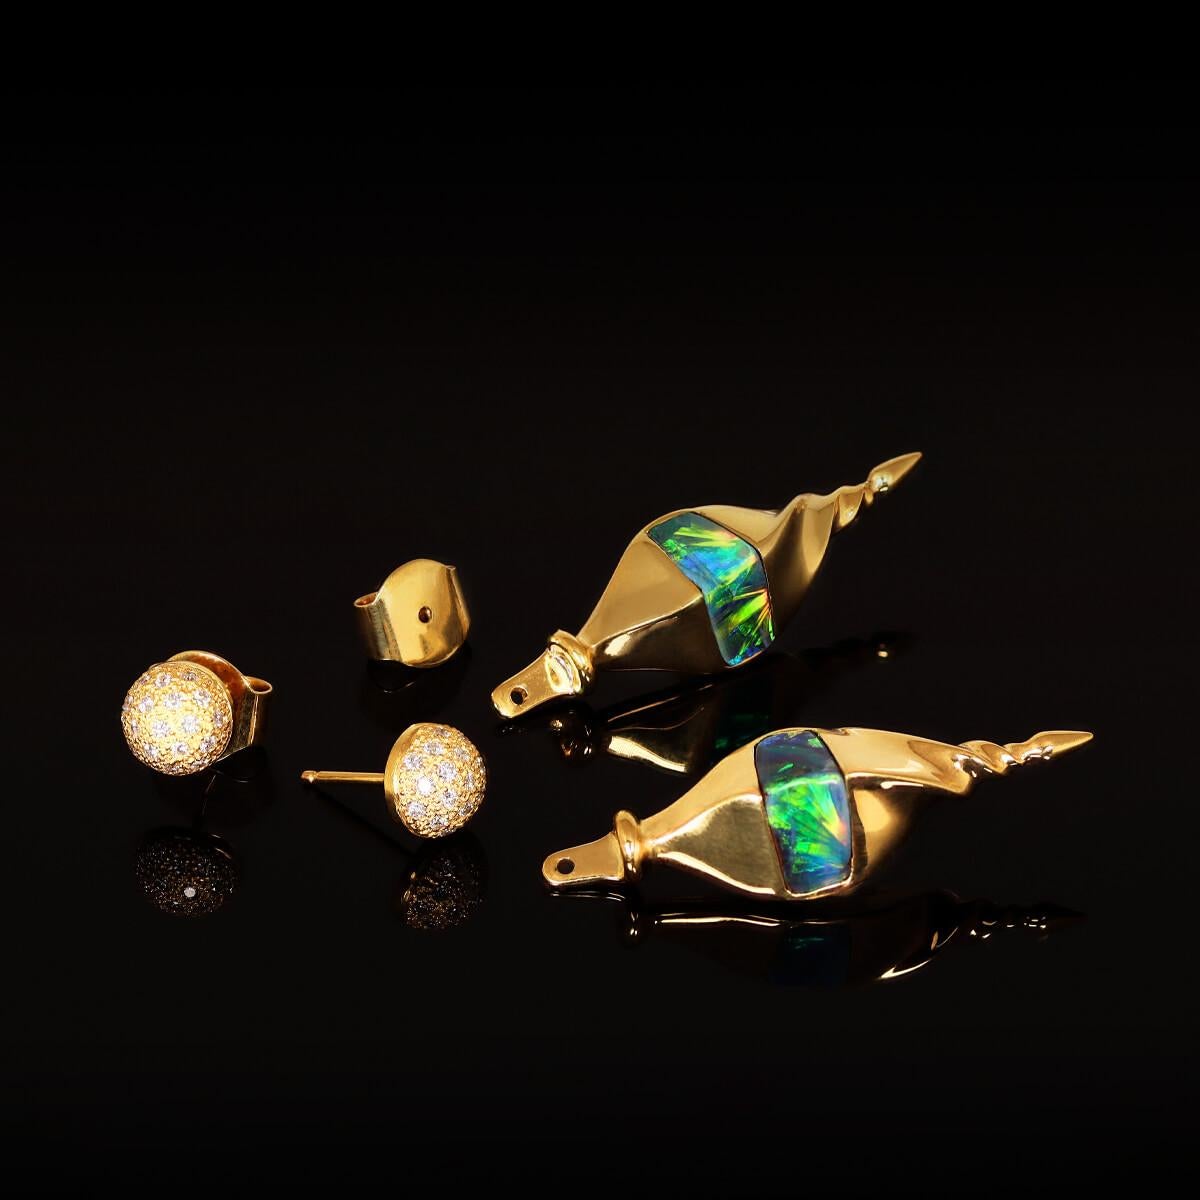 SPÉCIFICATIONS
Type d'opale : Opale boulder noire
Poids de l'opale : 7.27ct
Diamants : 0,40ct D IF - F VVS
Métaux : Or massif 18K

LA DIFFÉRENCE GRYFFIN OPAL
En investissant dans des bijoux en opale australienne de Gryffin Opal, vous optez pour un